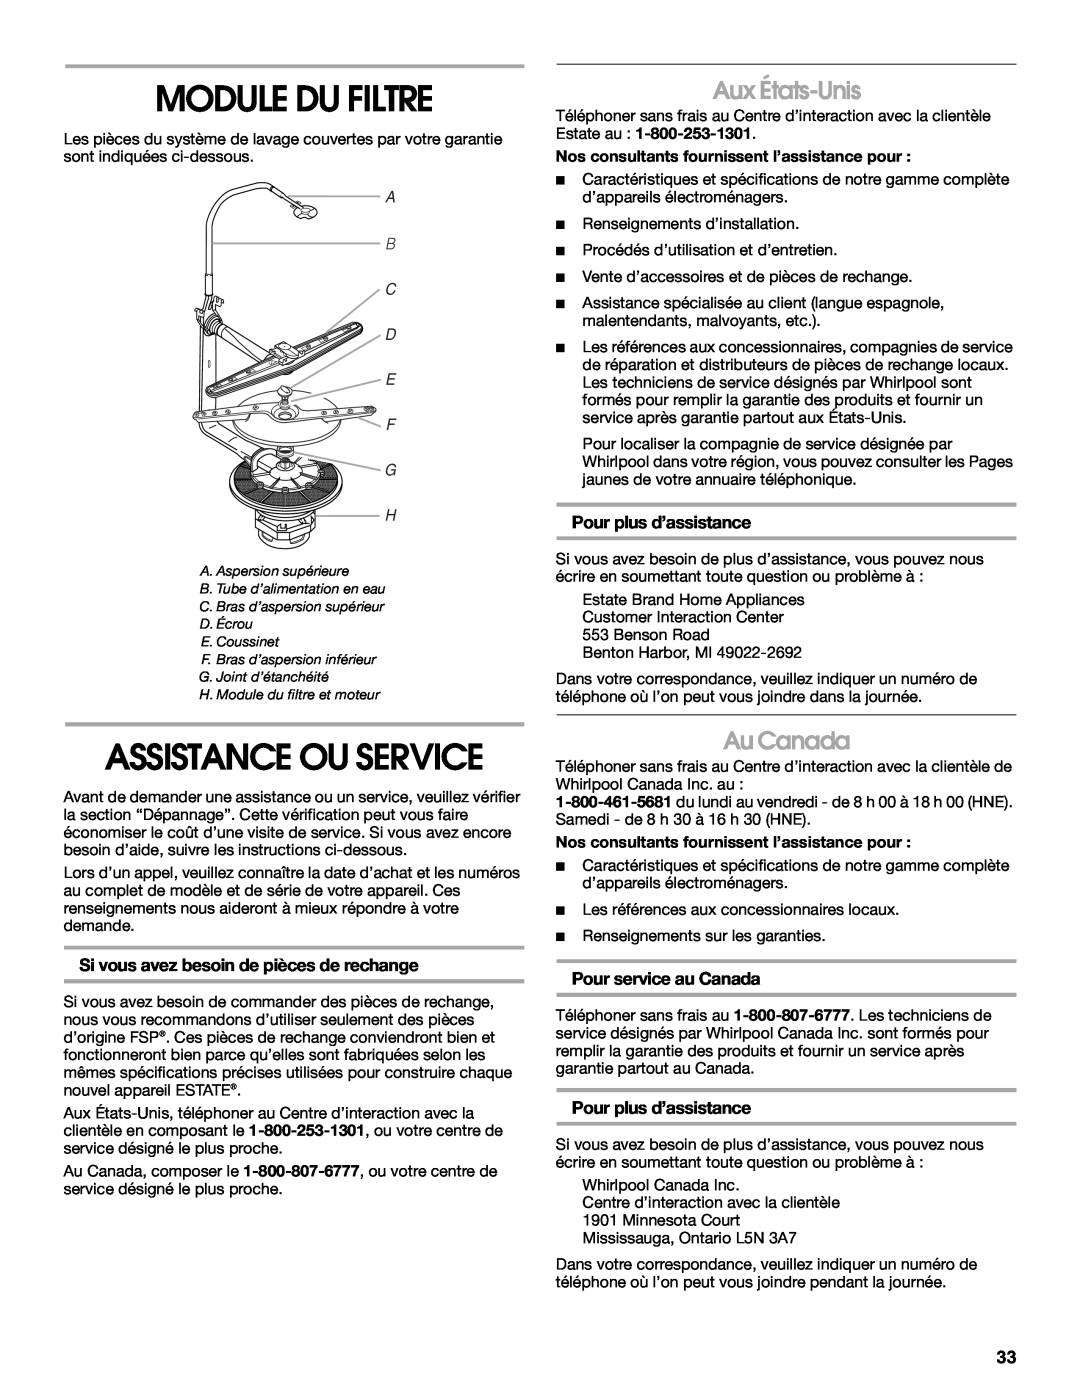 Whirlpool TUD6900 Module Du Filtre, Assistance Ou Service, Aux États-Unis, Au Canada, Pour plus d’assistance, A B C D E F 